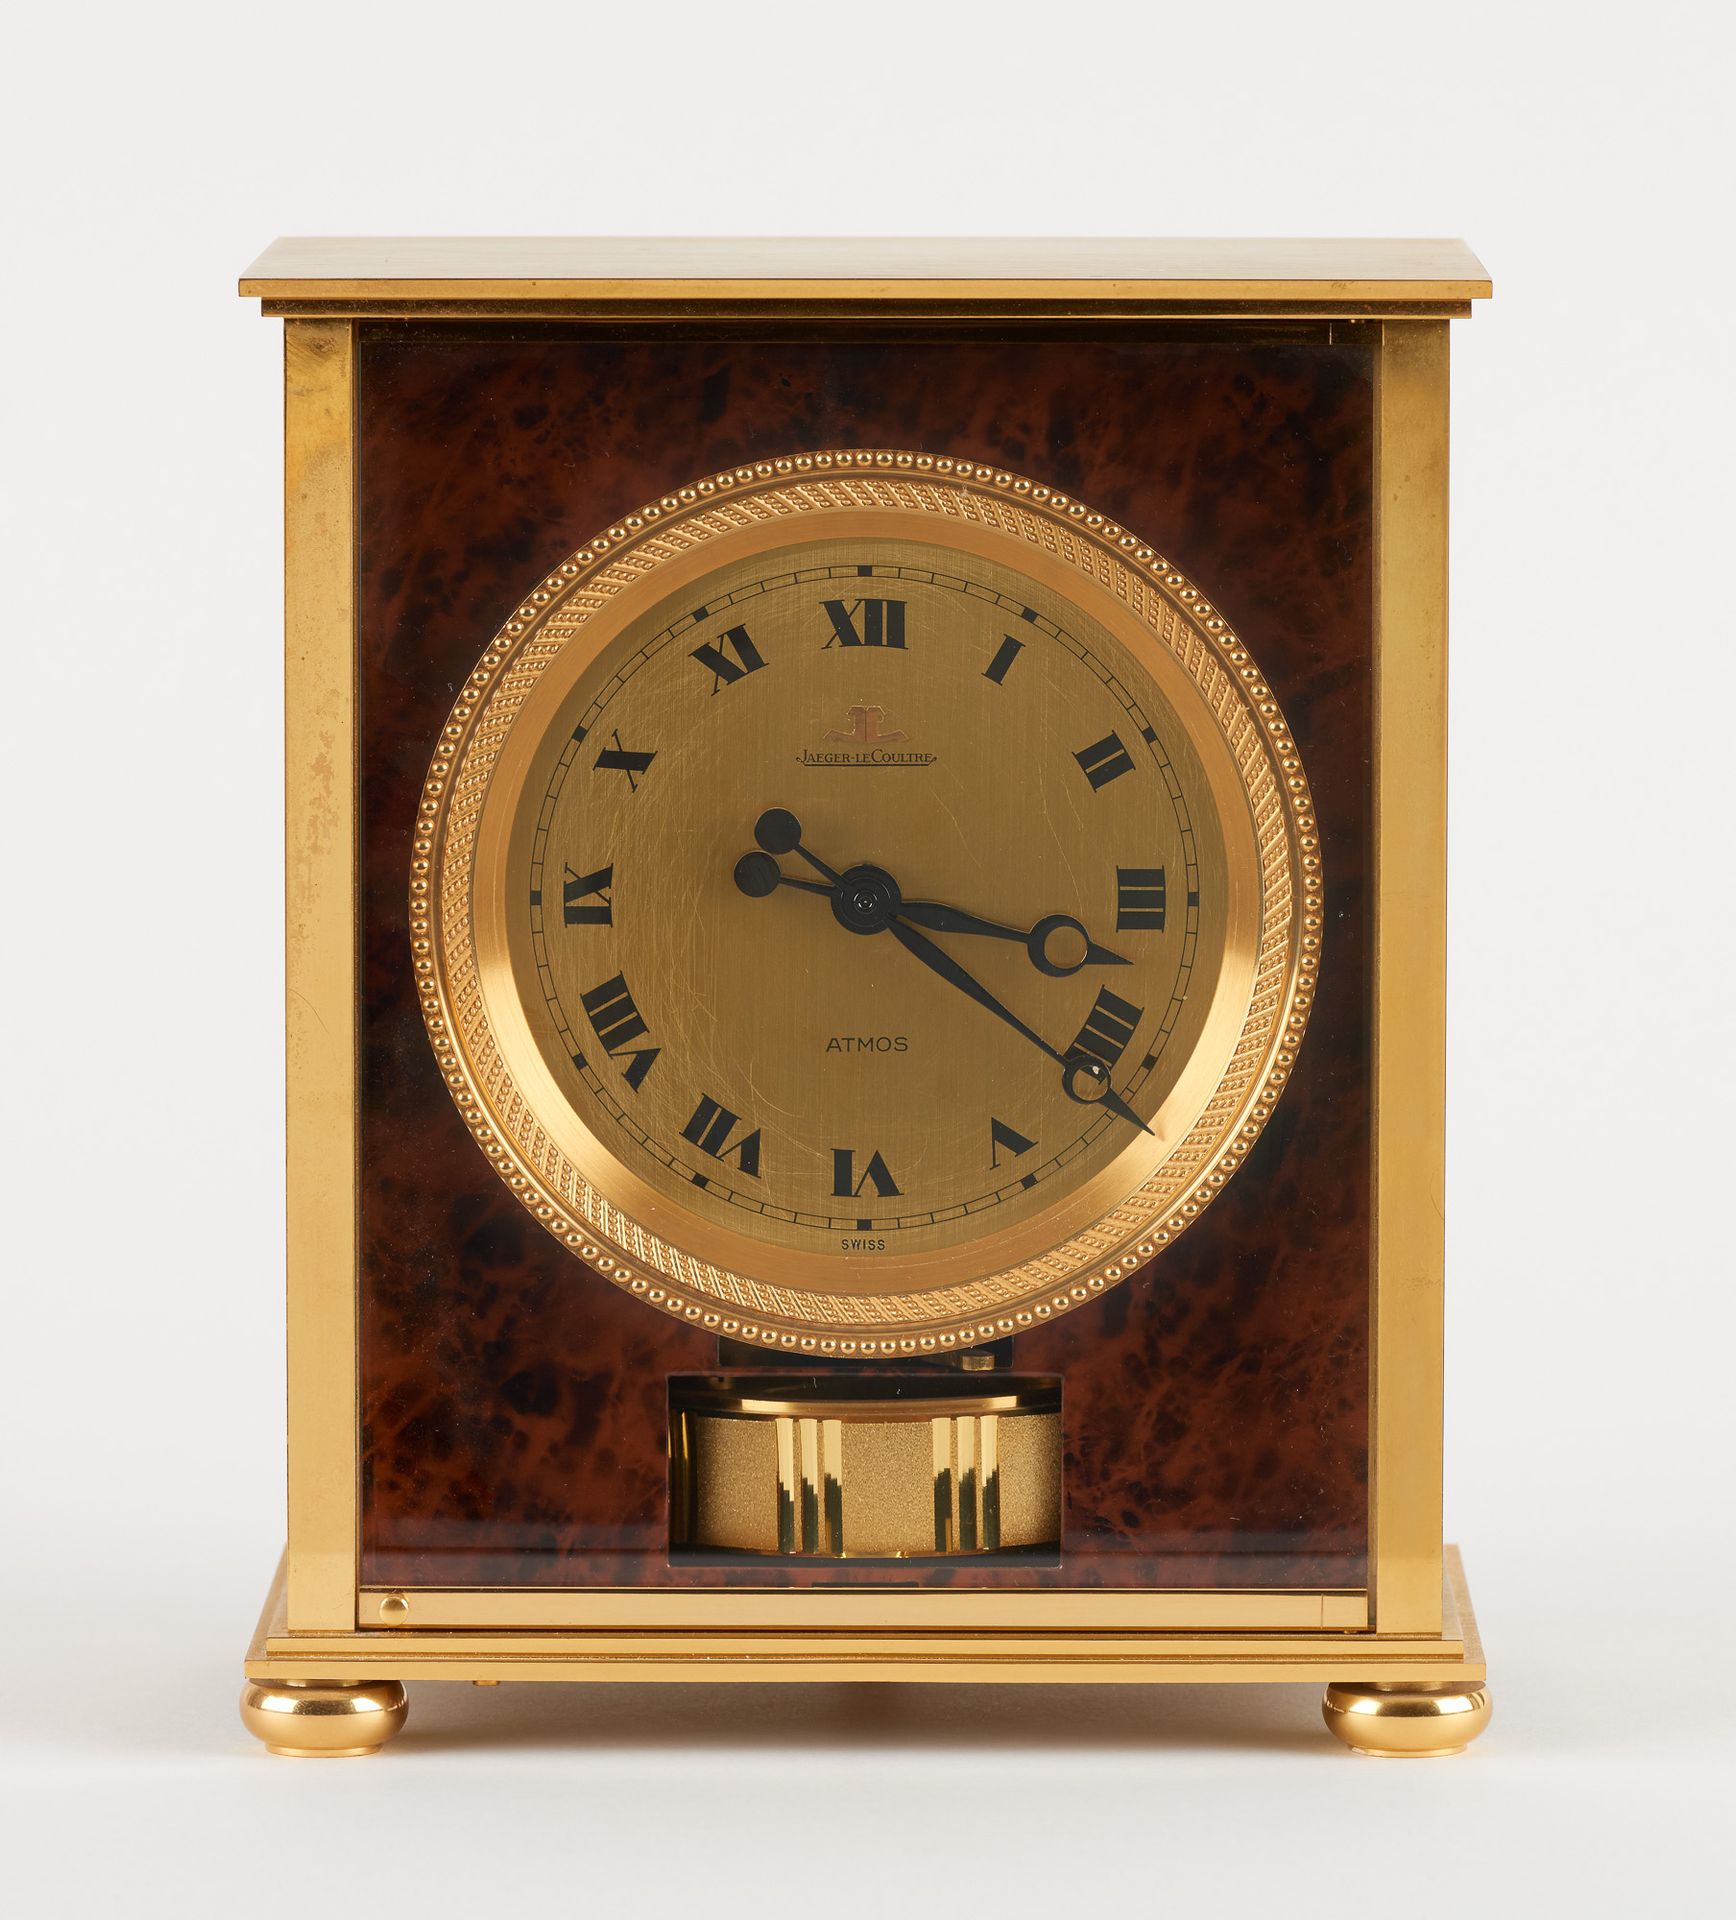 JAEGER LECOULTRE. 发条：用胡桃木毛刺装饰的黄铜钟。

积家（Jaeger LeCoultre），型号为 "Atmos Élysée"。

尺寸&hellip;